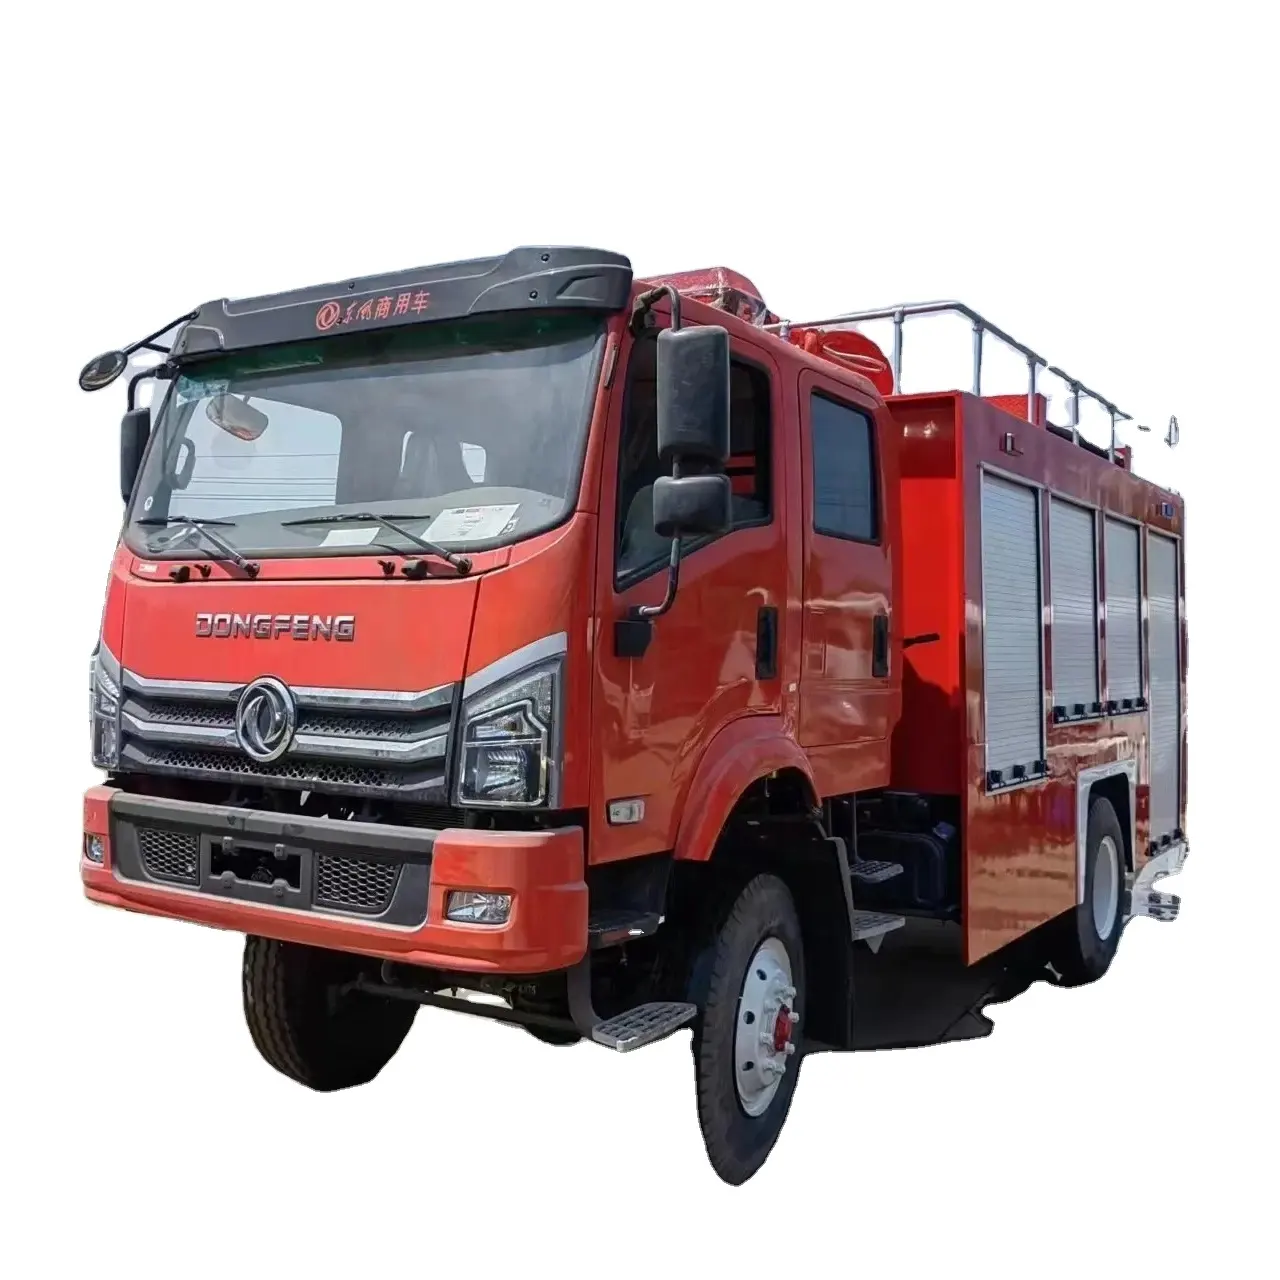 Dongfeng Feuerwehr auto Es wird haupt sächlich für Feuerwehr einsätze und Notfall rettungs einsätze verwendet